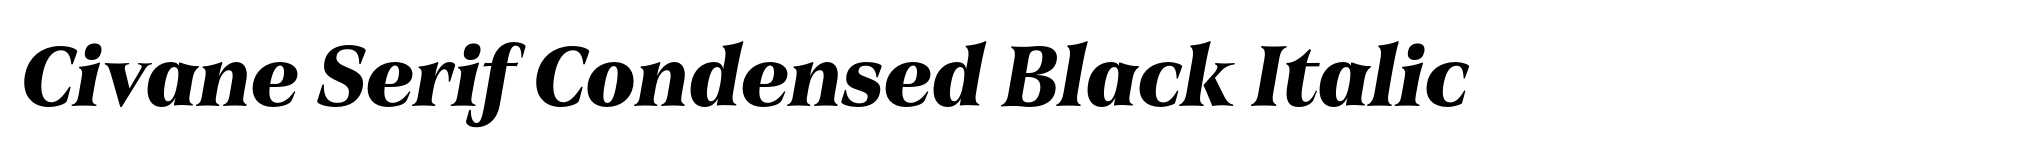 Civane Serif Condensed Black Italic image